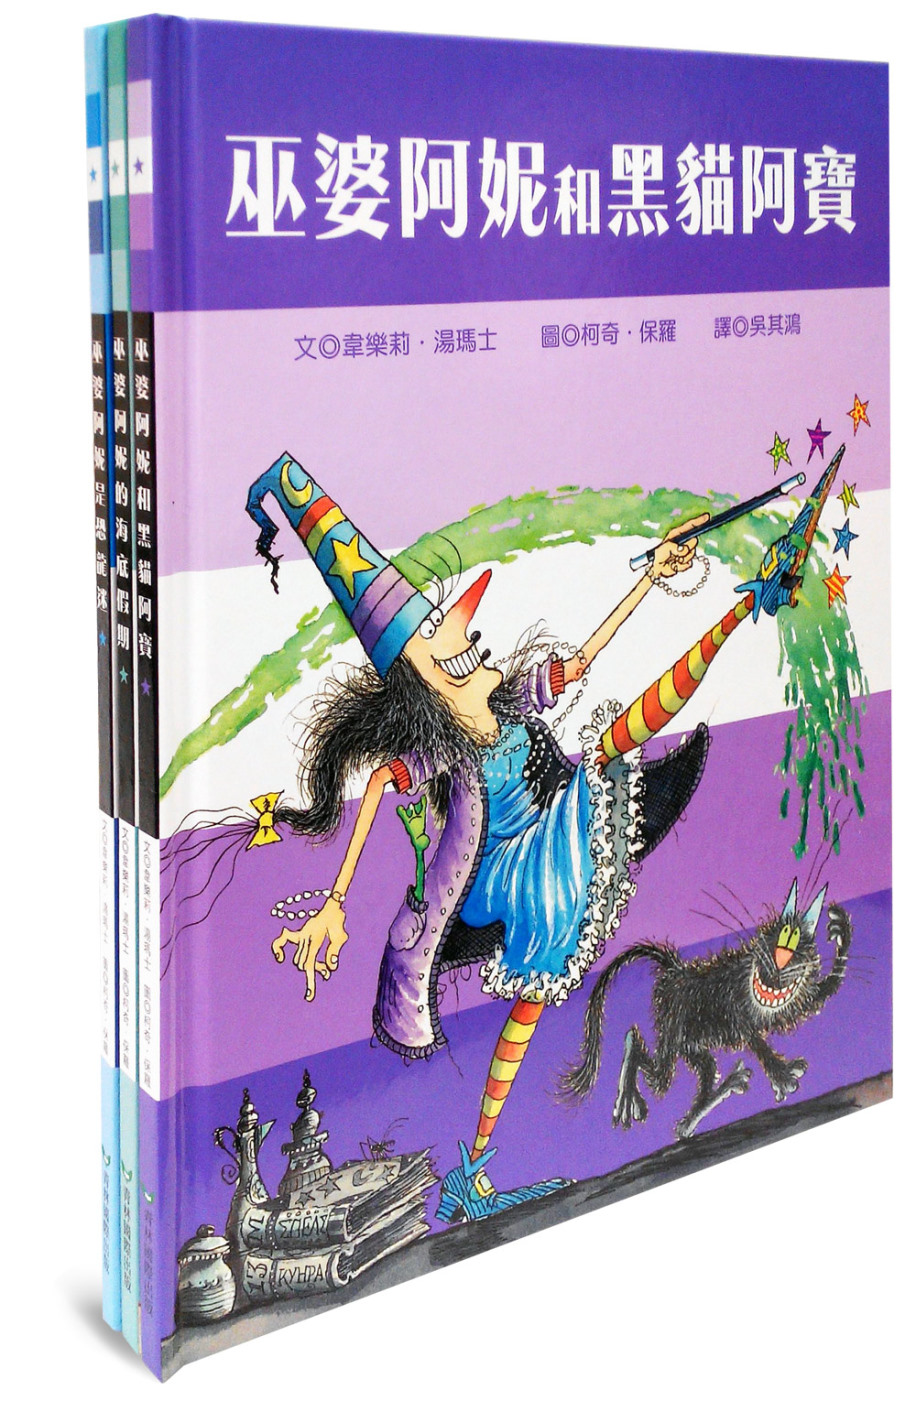 巫婆阿妮的繪本魔法棒系列 (巫婆阿妮和黑貓阿寶+巫婆阿妮的海底假期+巫婆阿妮是恐龍迷)